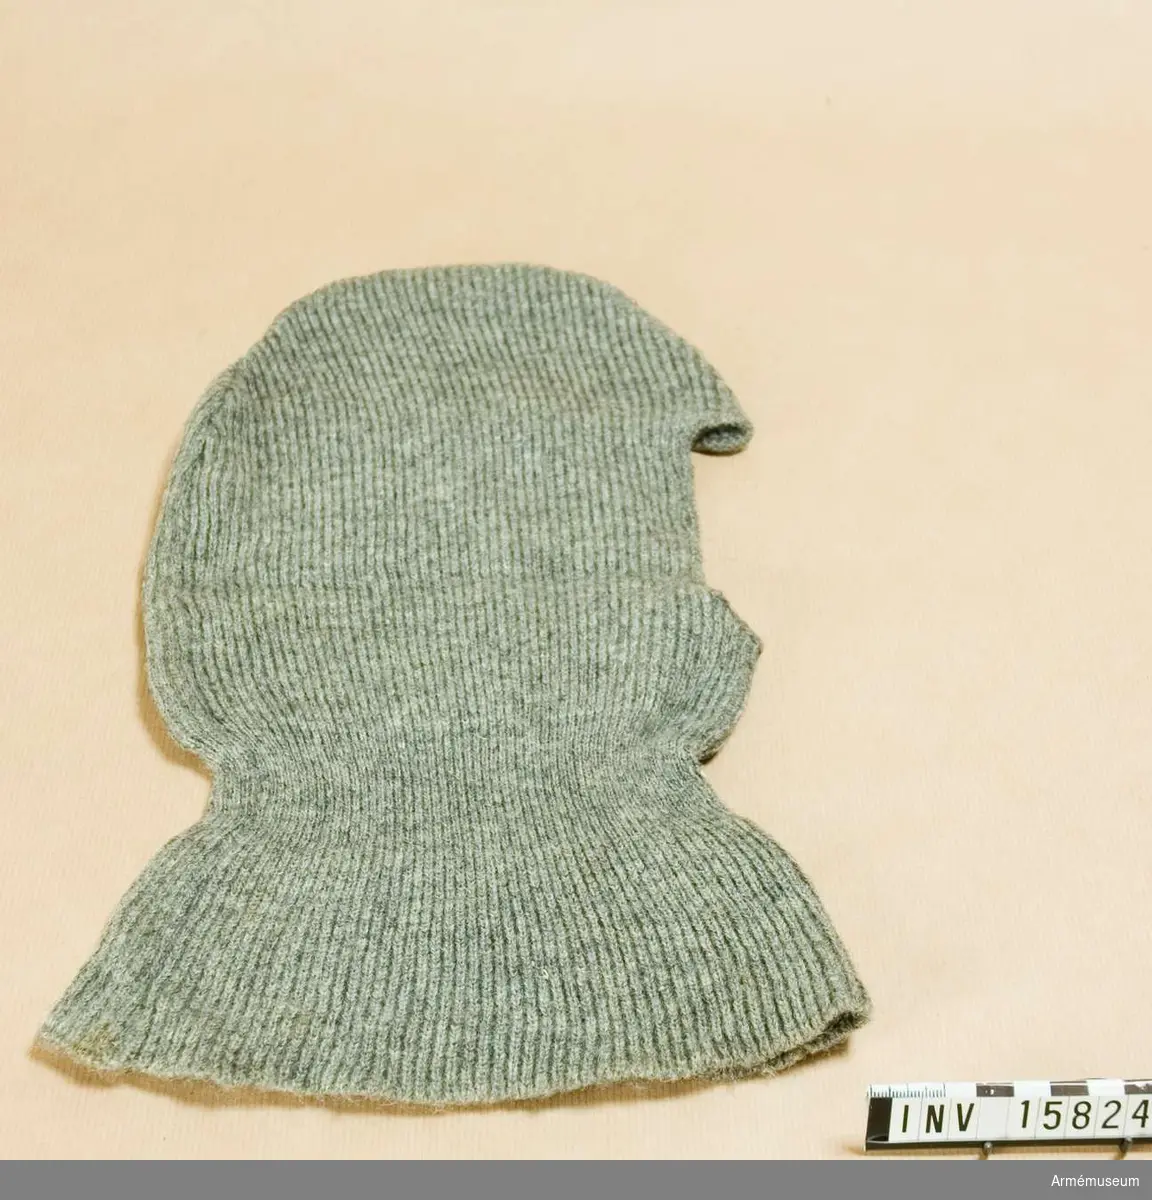 Grupp C.
Hjälmskydd (huva) av grått ylle. Huvan användes om vintern och mest när soldaterna har stålhjälm på.